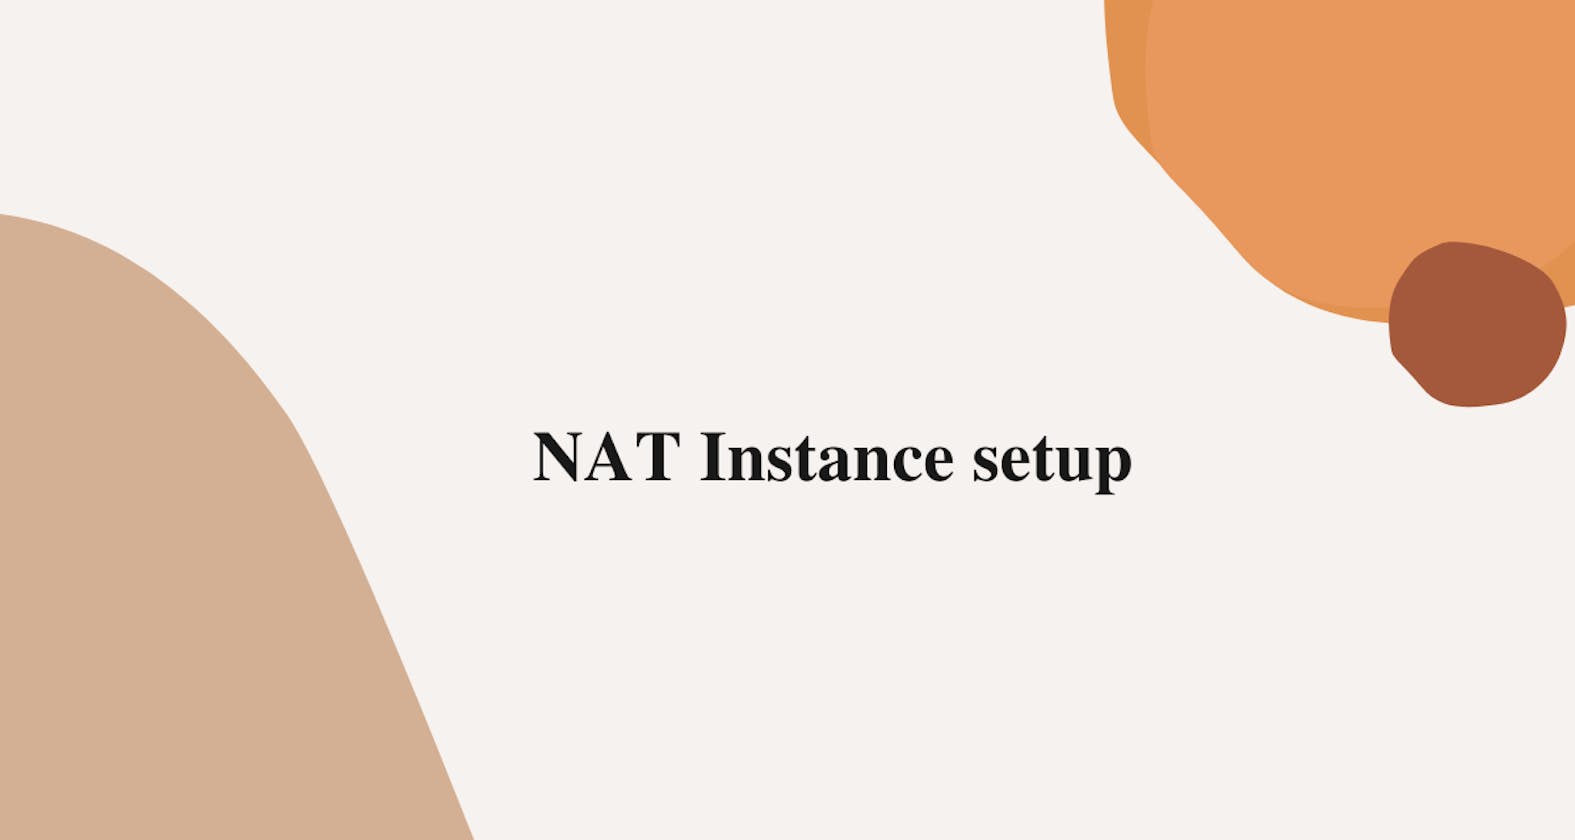 NAT instance setup